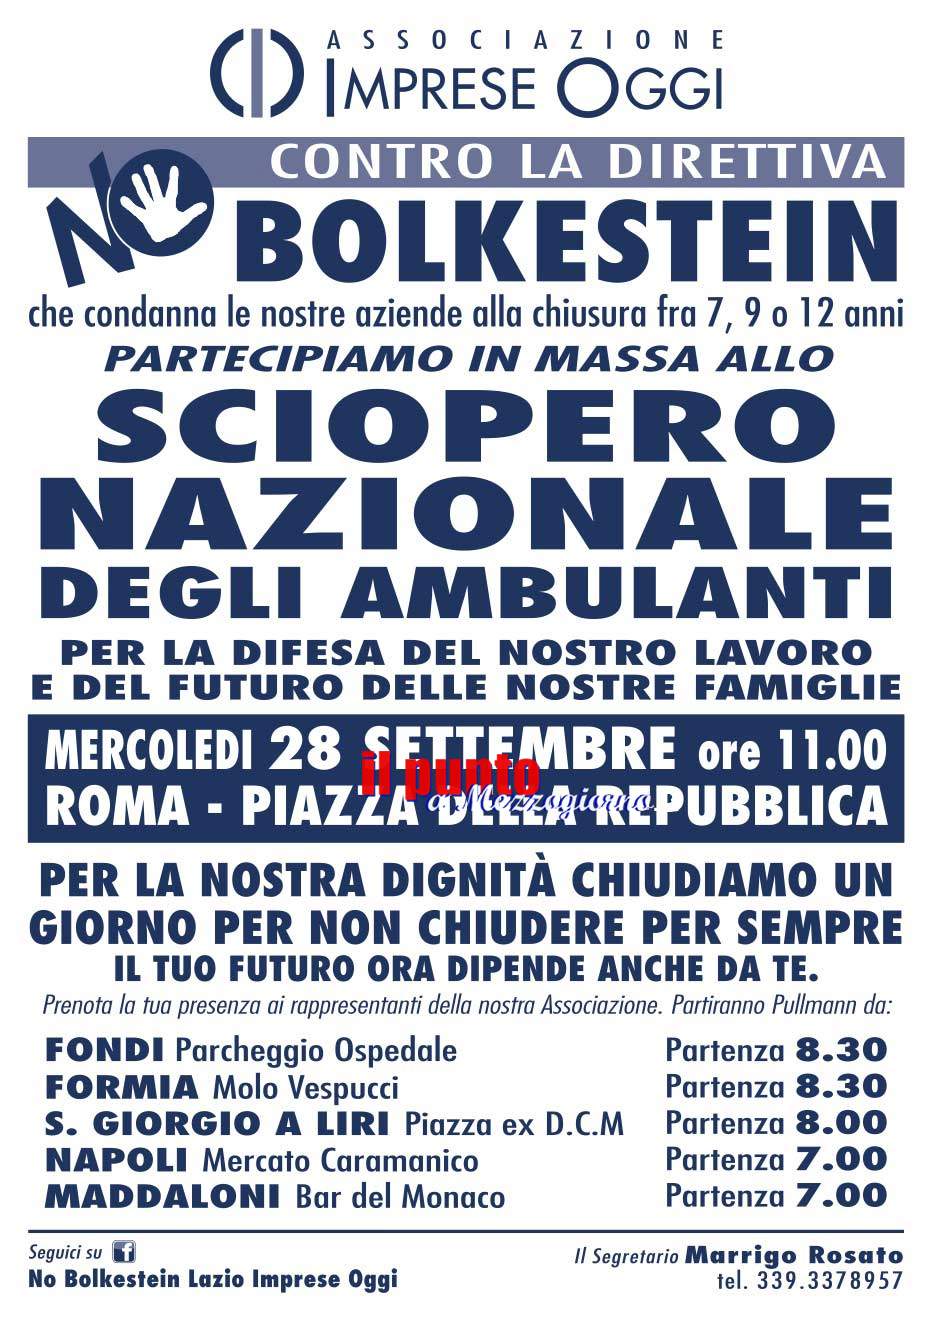 Manifestazione nazionale contro la direttiva Bolkestein, parteciperano anche ambualanti e stabilimenti di Latina e Frosinone